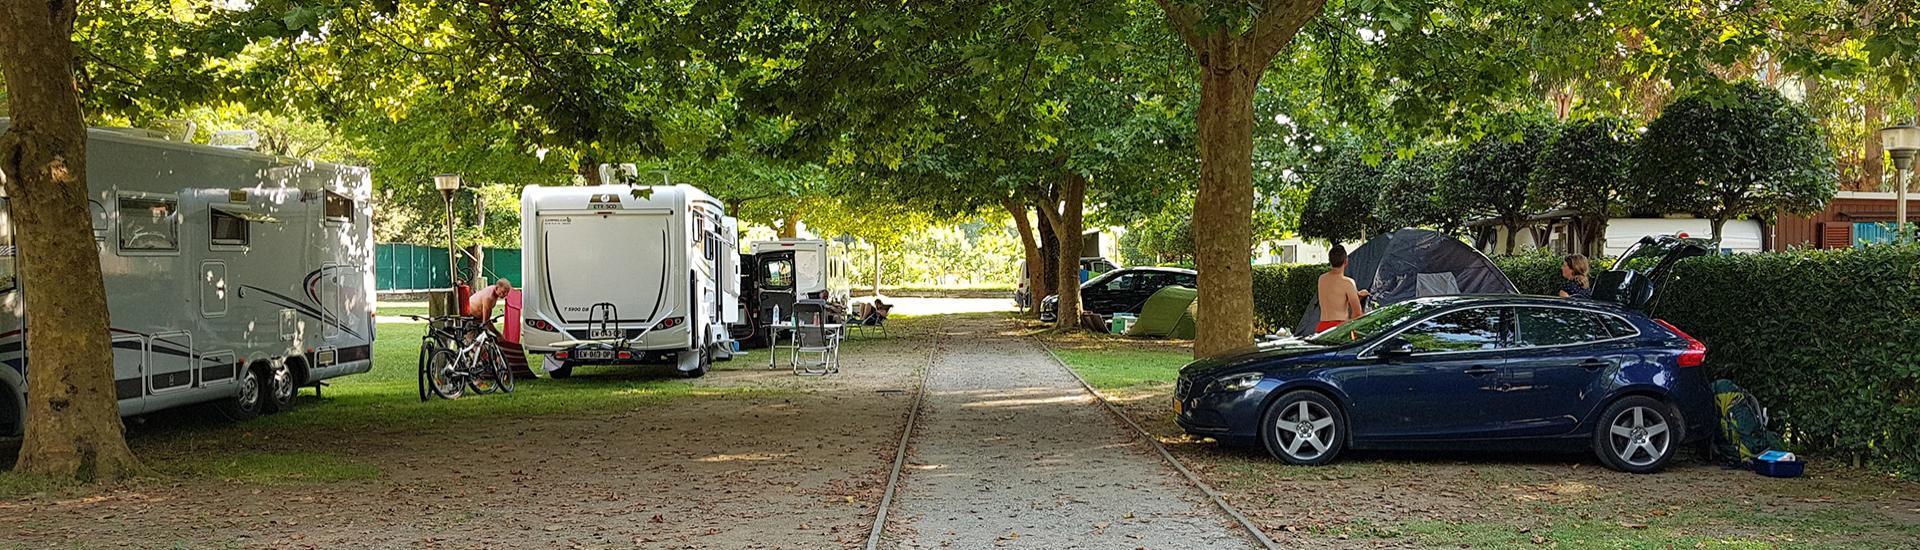 Campeggio con camper, auto e tende sotto alberi ombrosi.